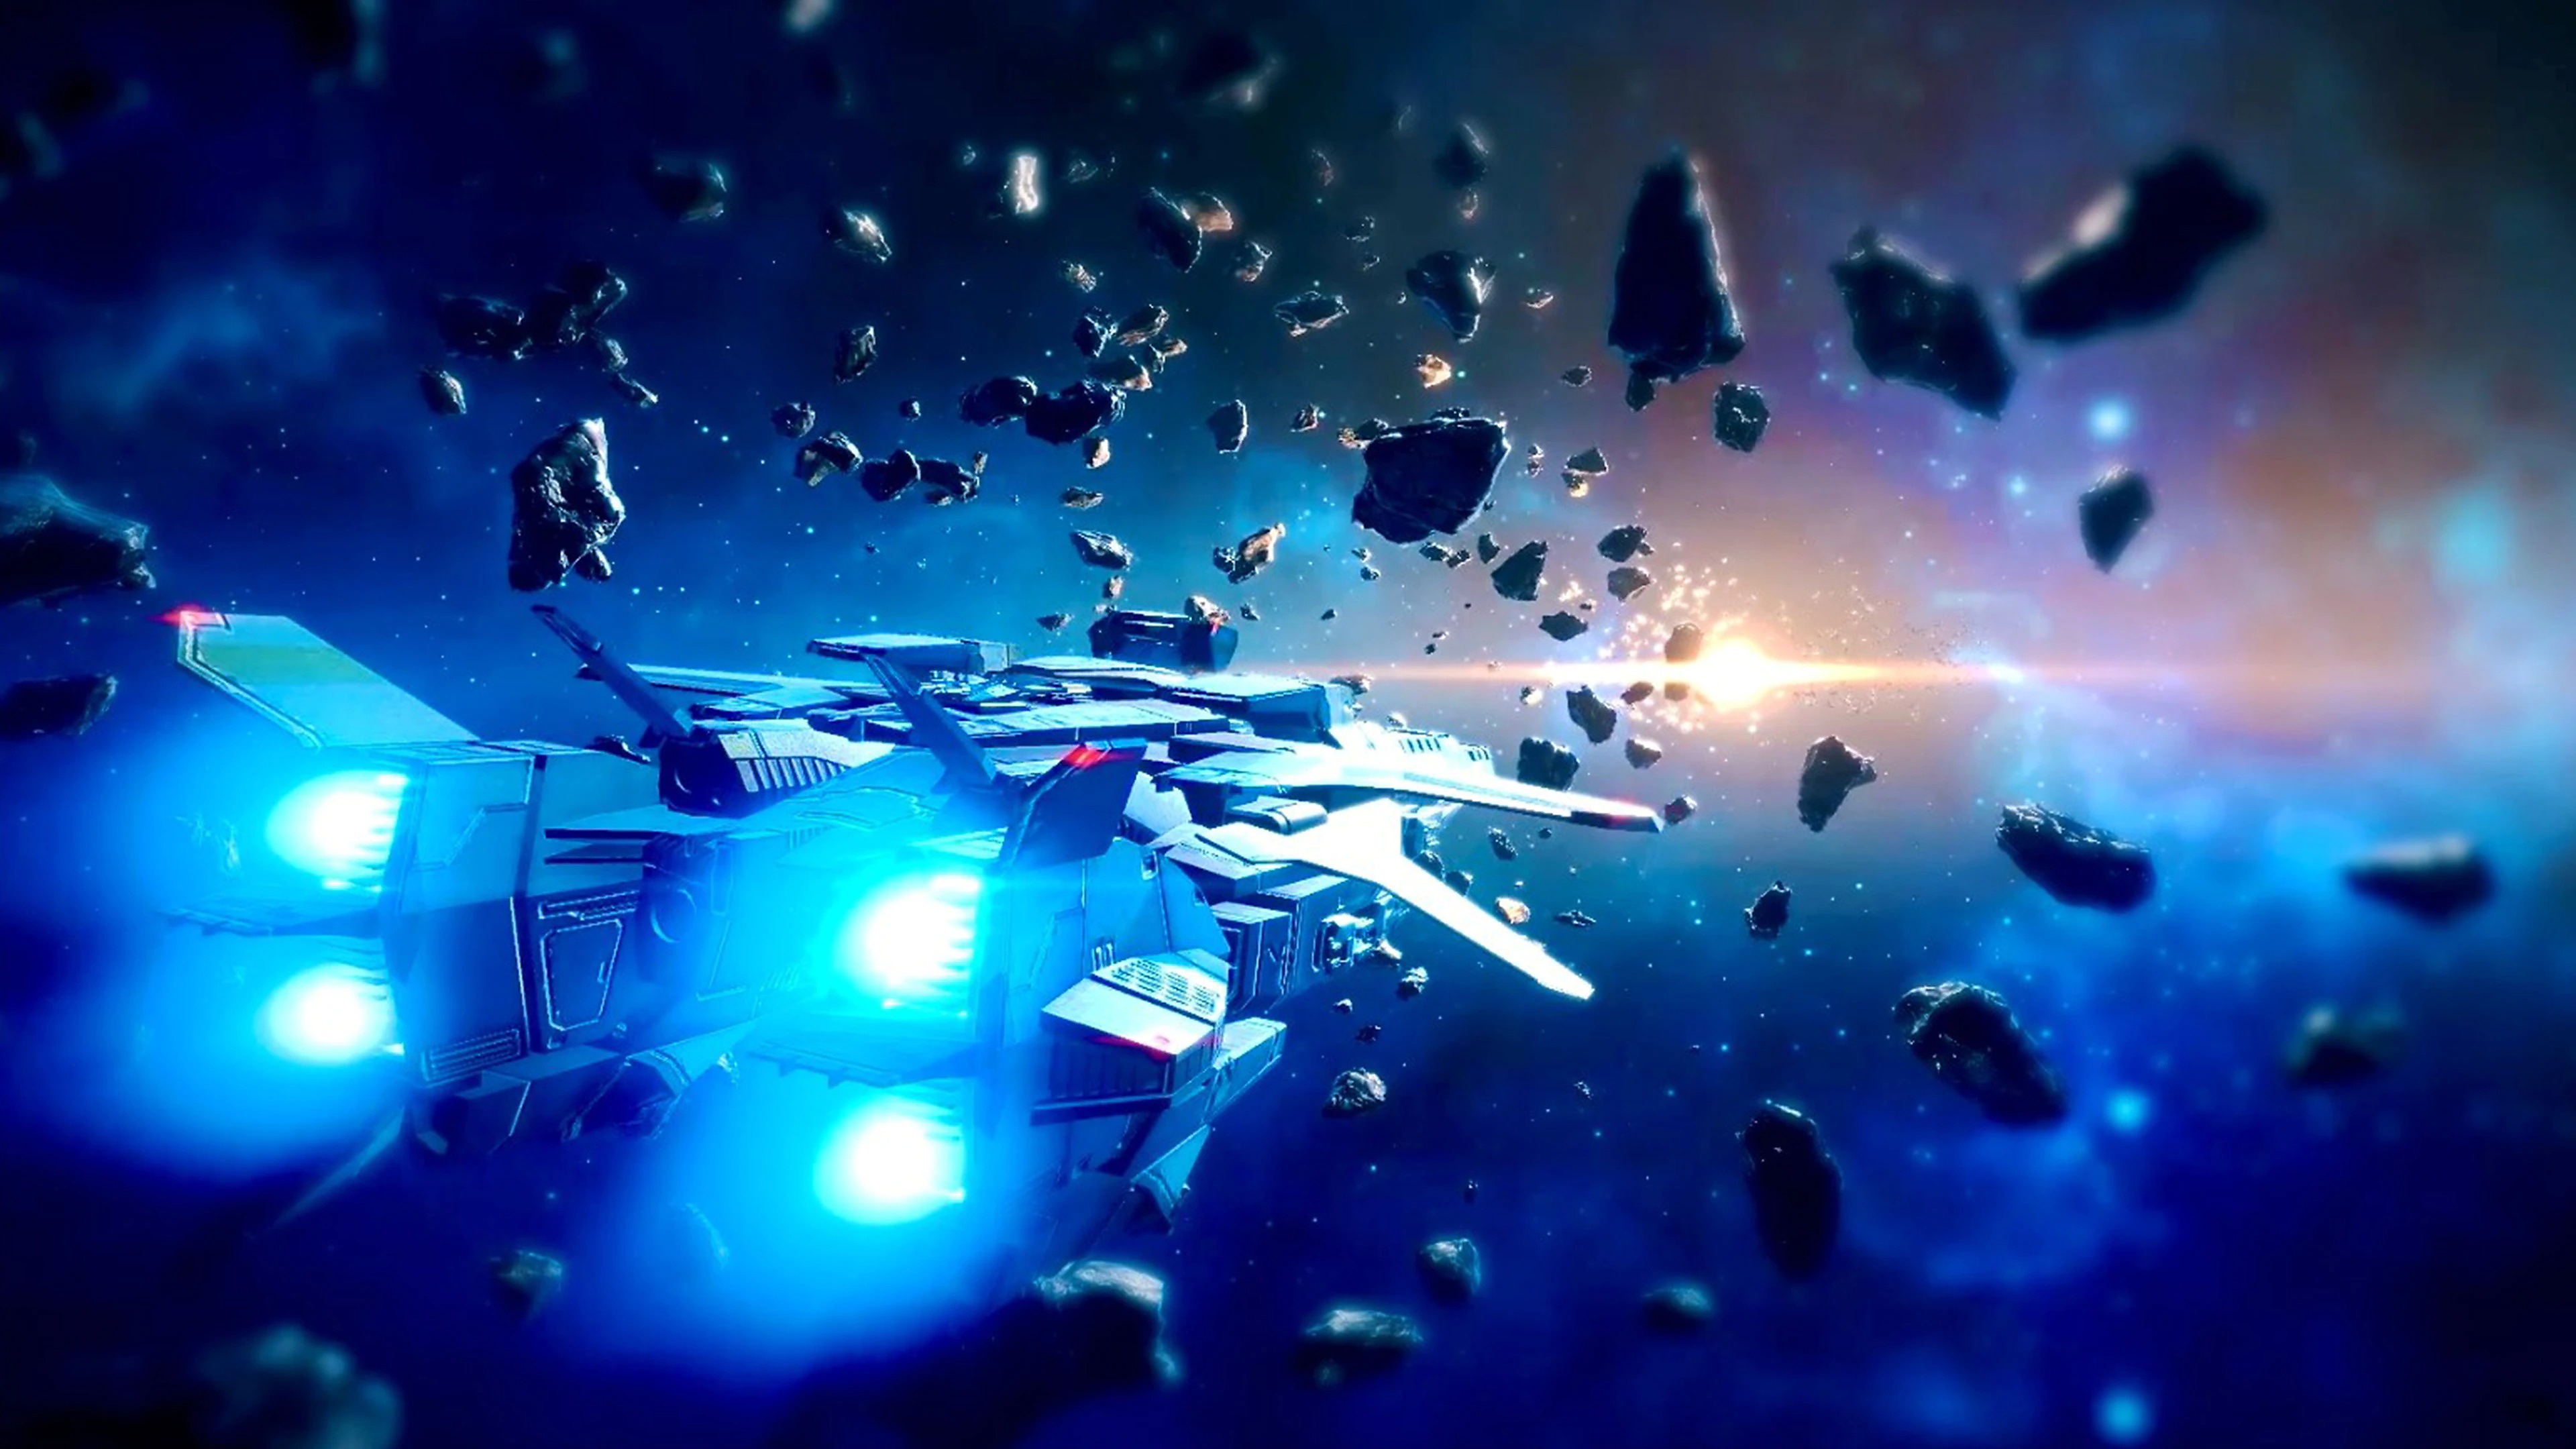 《傳繼者》螢幕截圖，顯示一座太空船在太空中飛越岩石